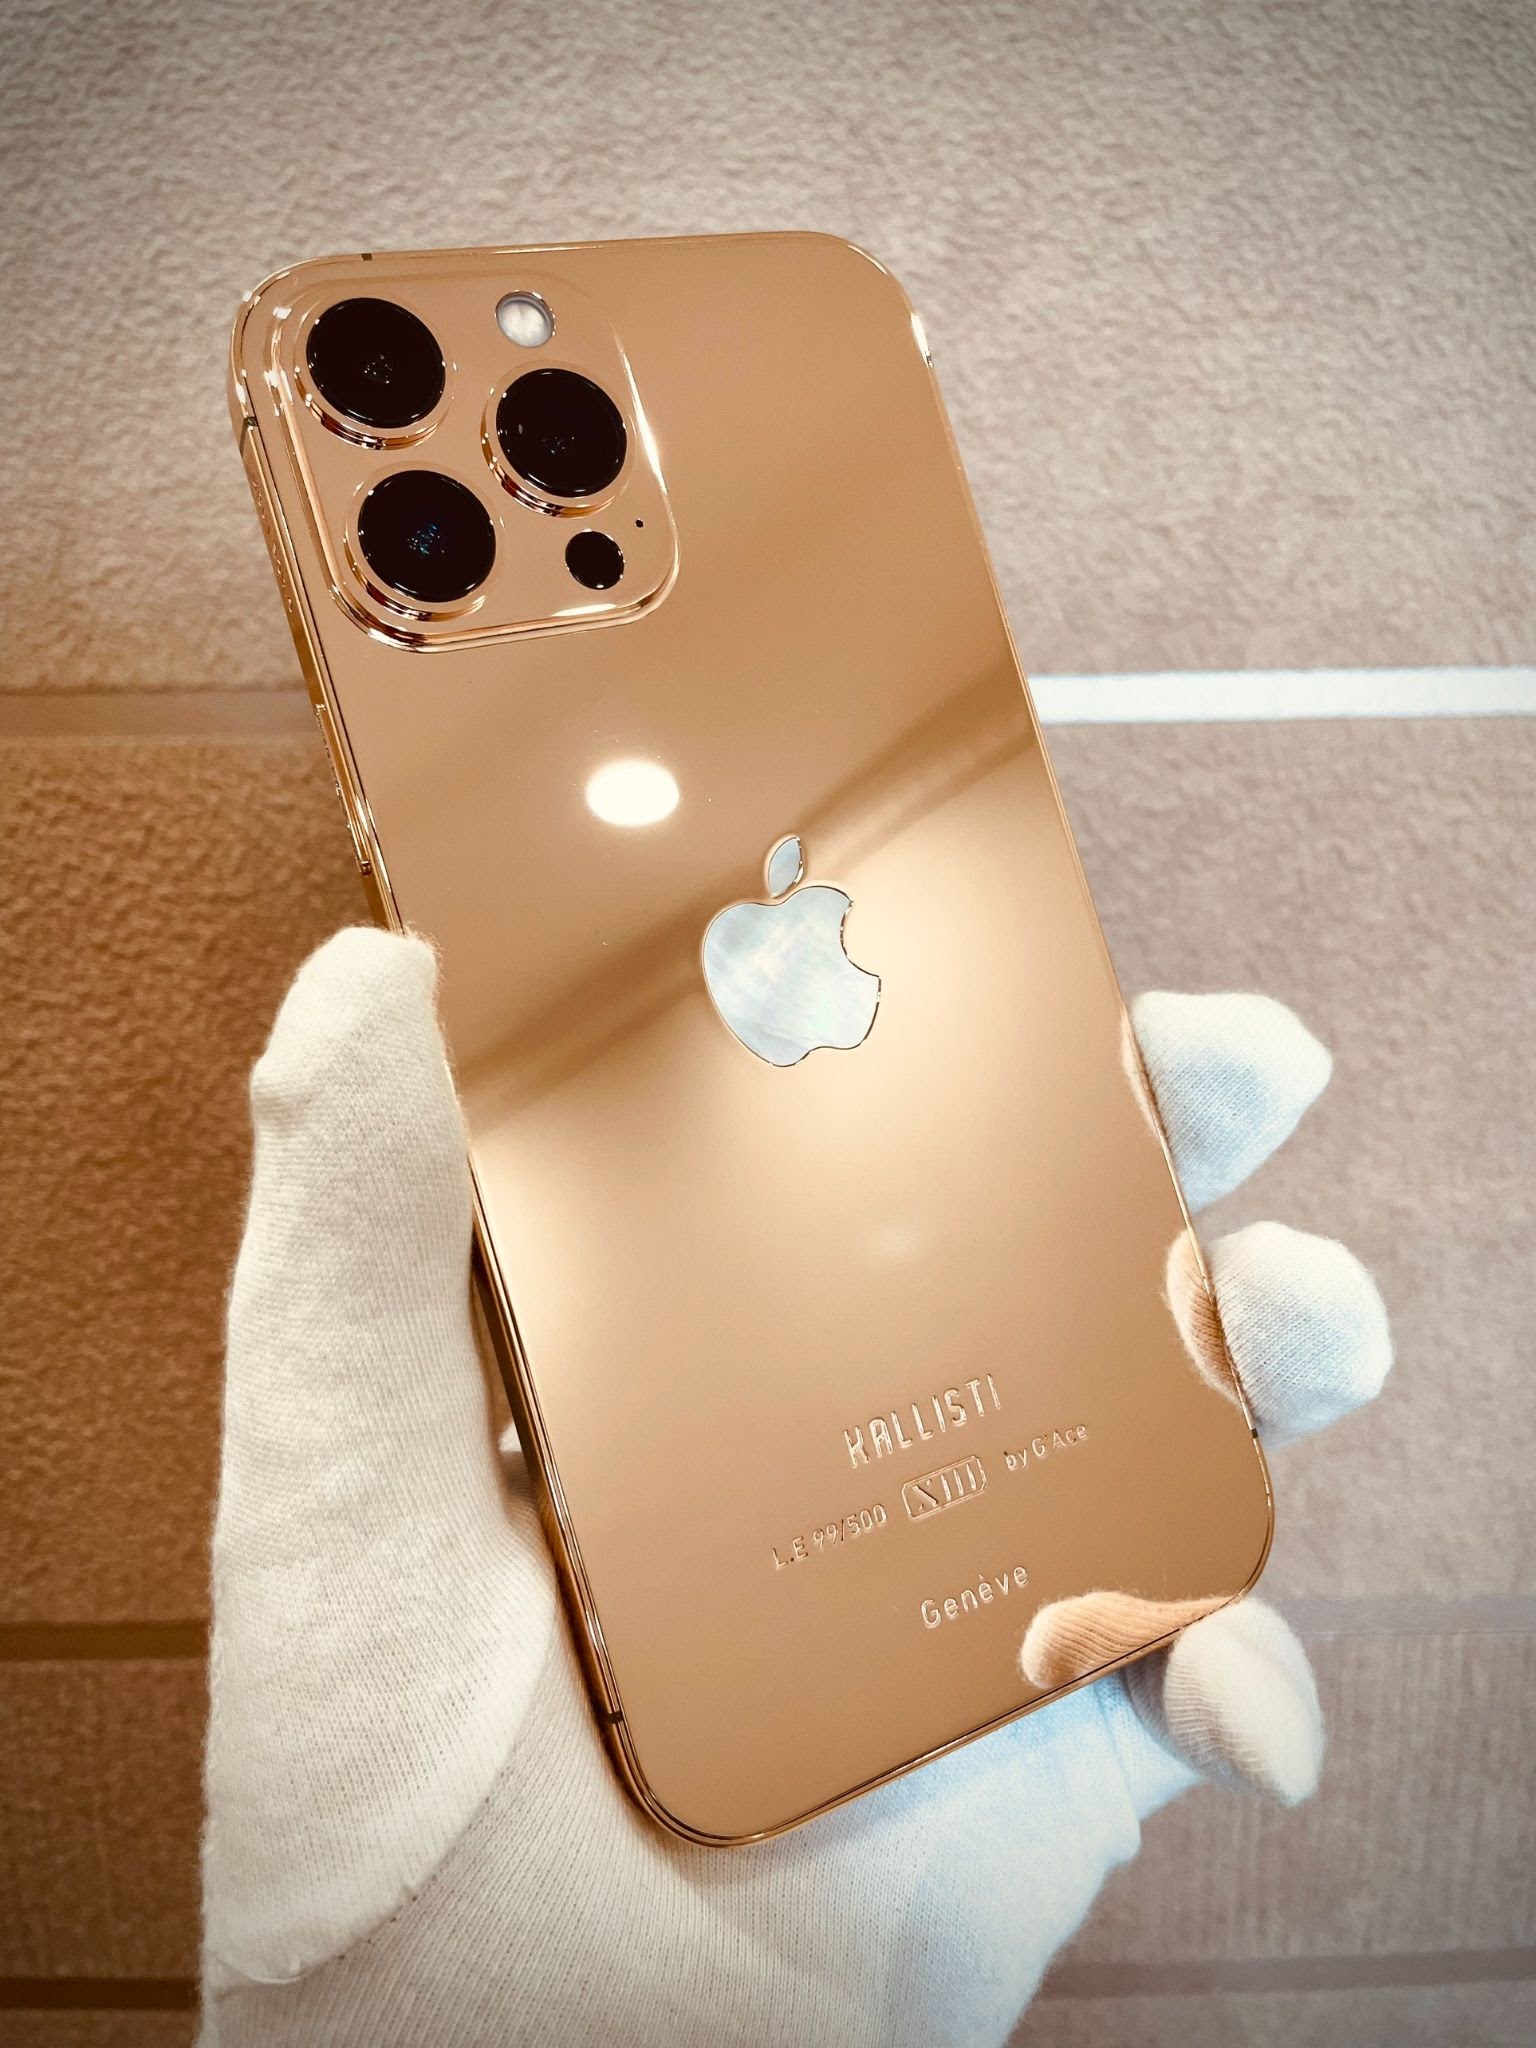 Với phiên bản iPhone 13 Pro Max mạ vàng, bạn sẽ không thể rời mắt khỏi thiết kế cực kỳ sang trọng và đẳng cấp. Hãy cùng nhìn lại chi tiết về sản phẩm này thông qua hình ảnh để biết thêm về tính năng cũng như ngoại hình thật nổi bật của siêu phẩm này.